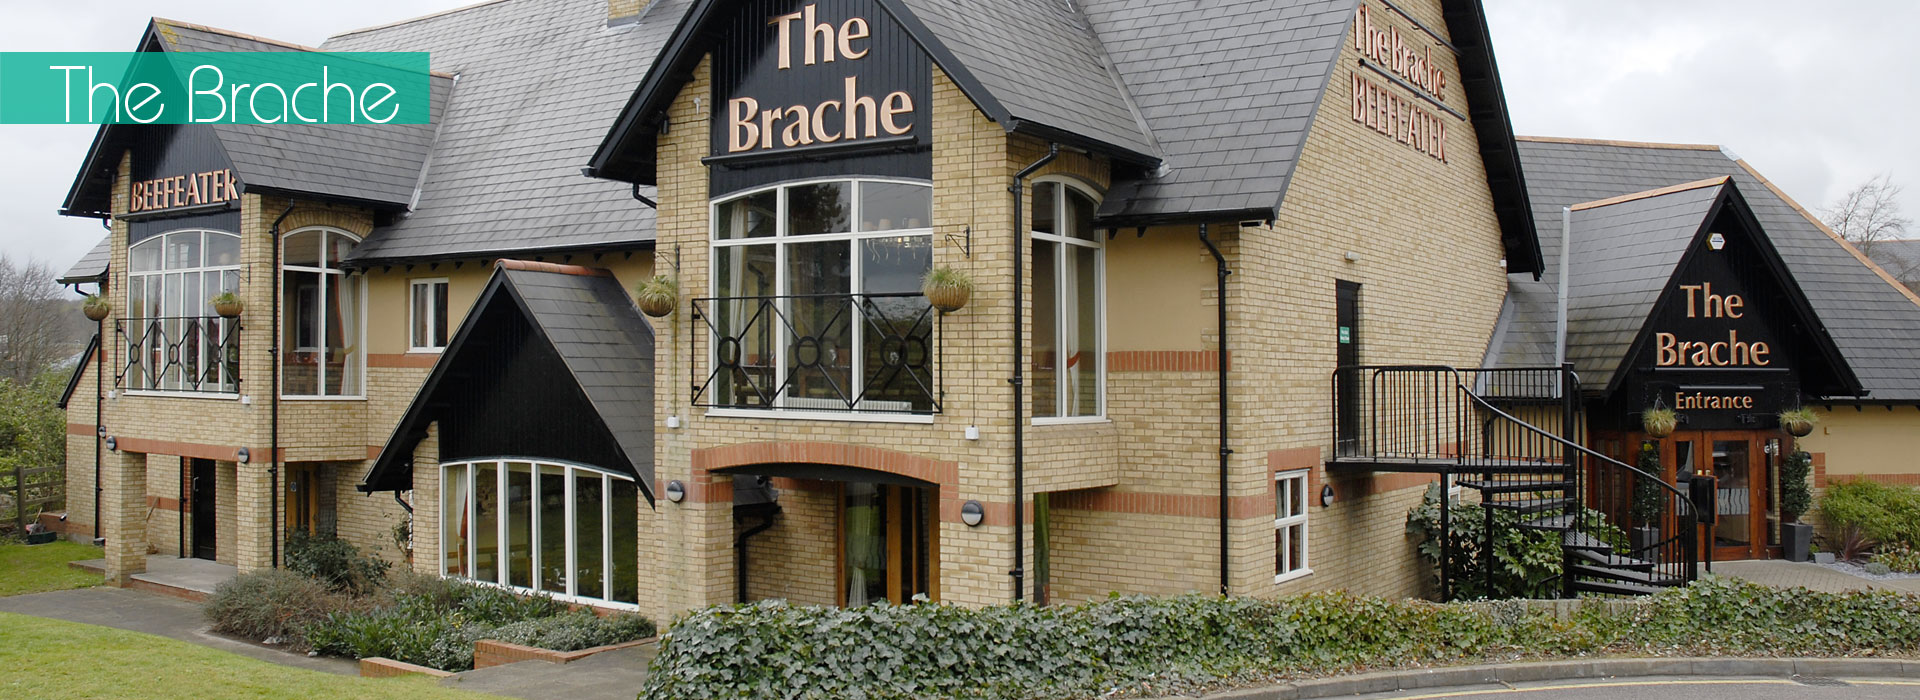 The Brache 1